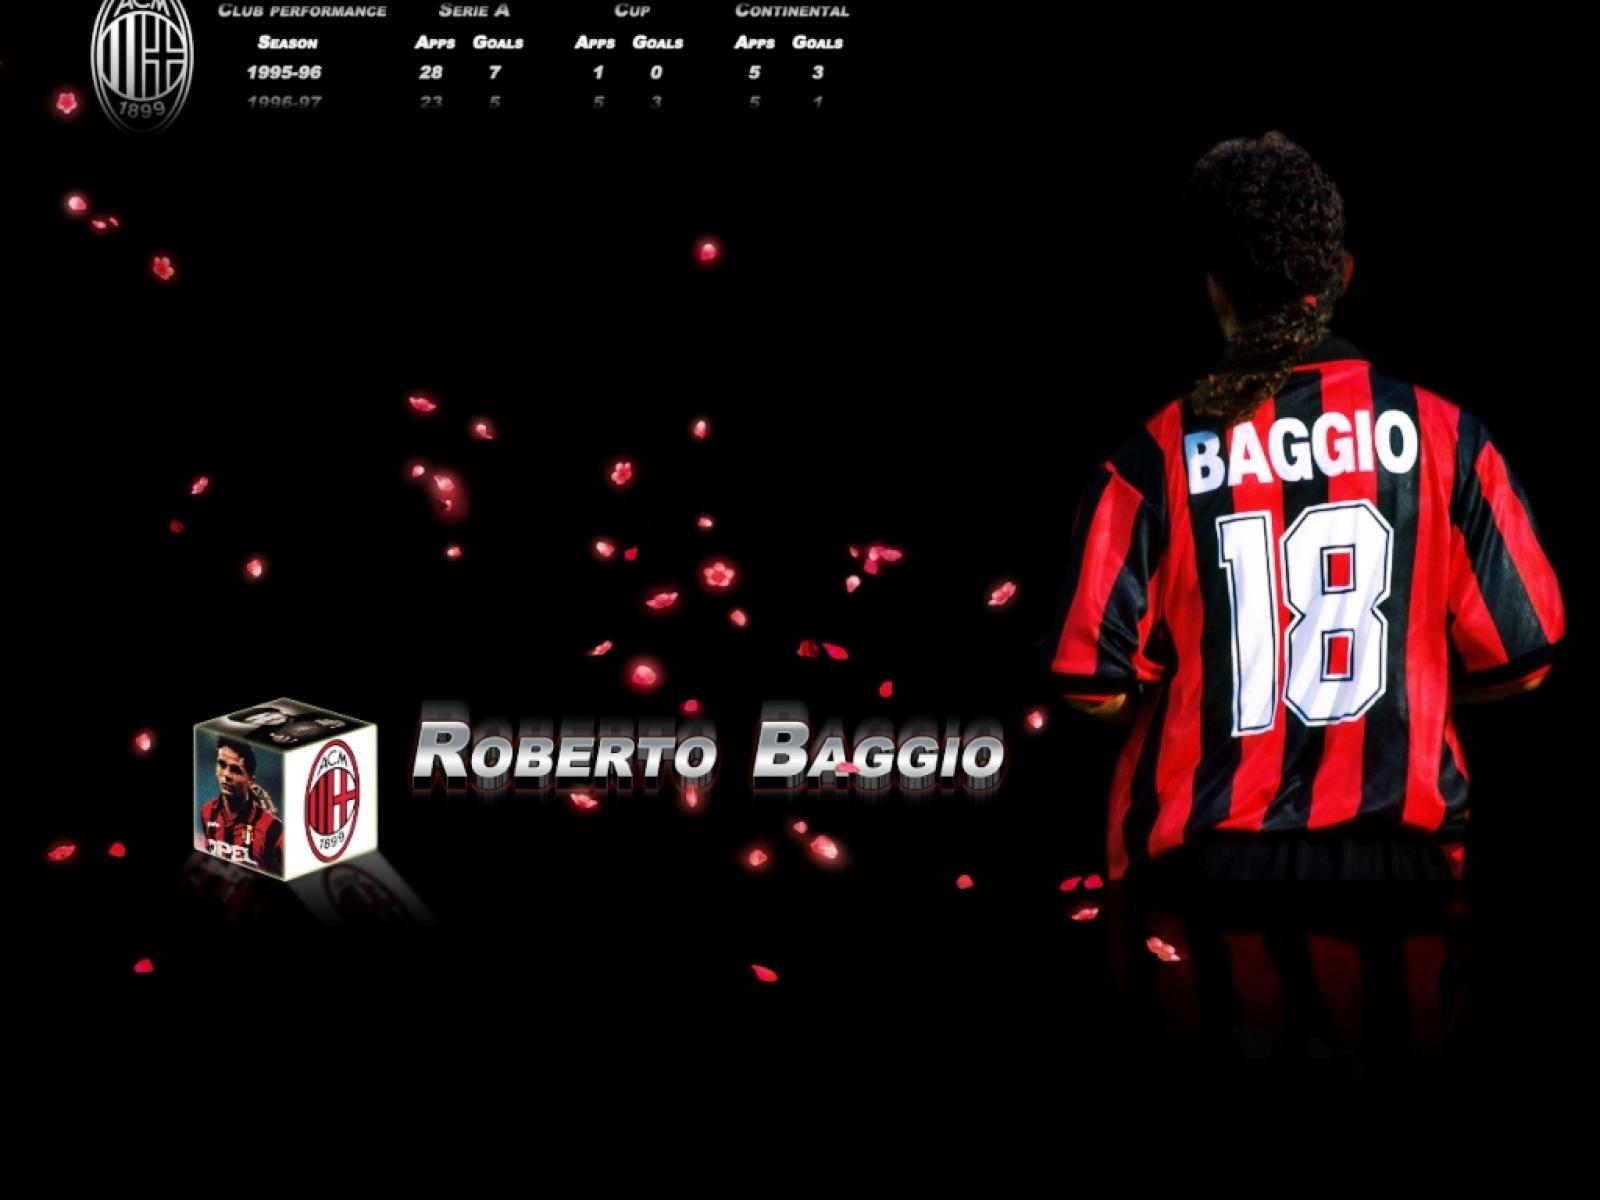 Roberto Baggio 1600x1200 Wallpaper, 1600x1200 Wallpaper